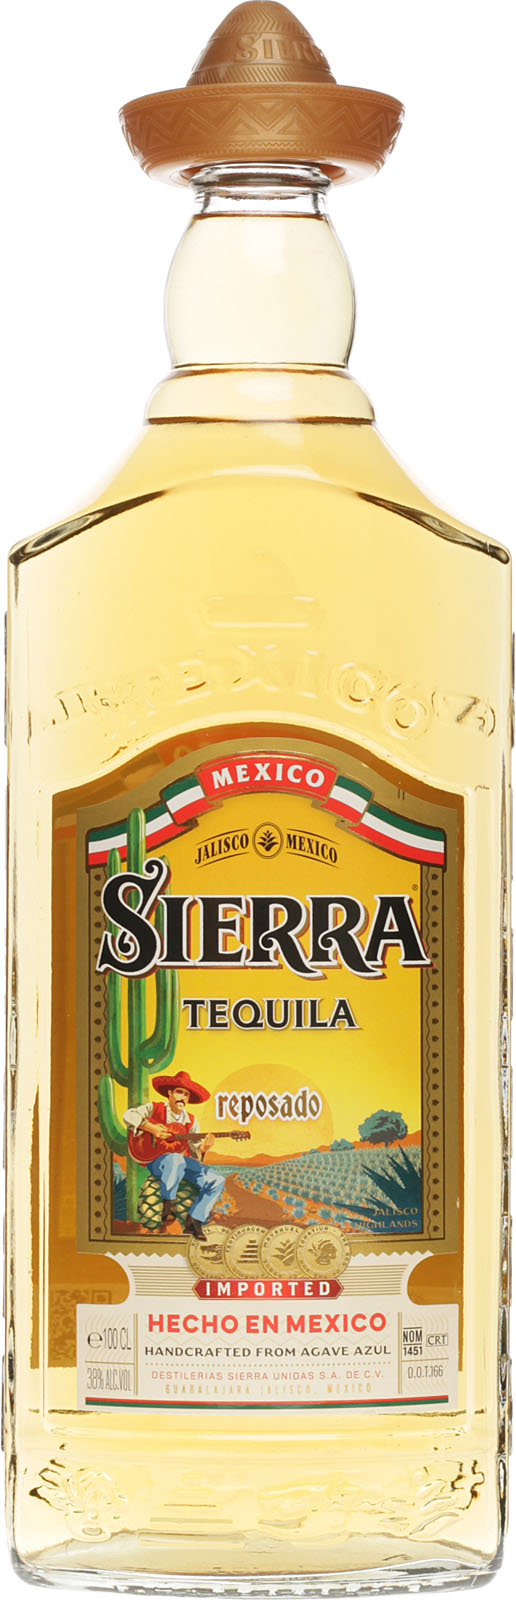 Liter Tequila aus Vol., Reposado M Tequila 38% 1 Sierra